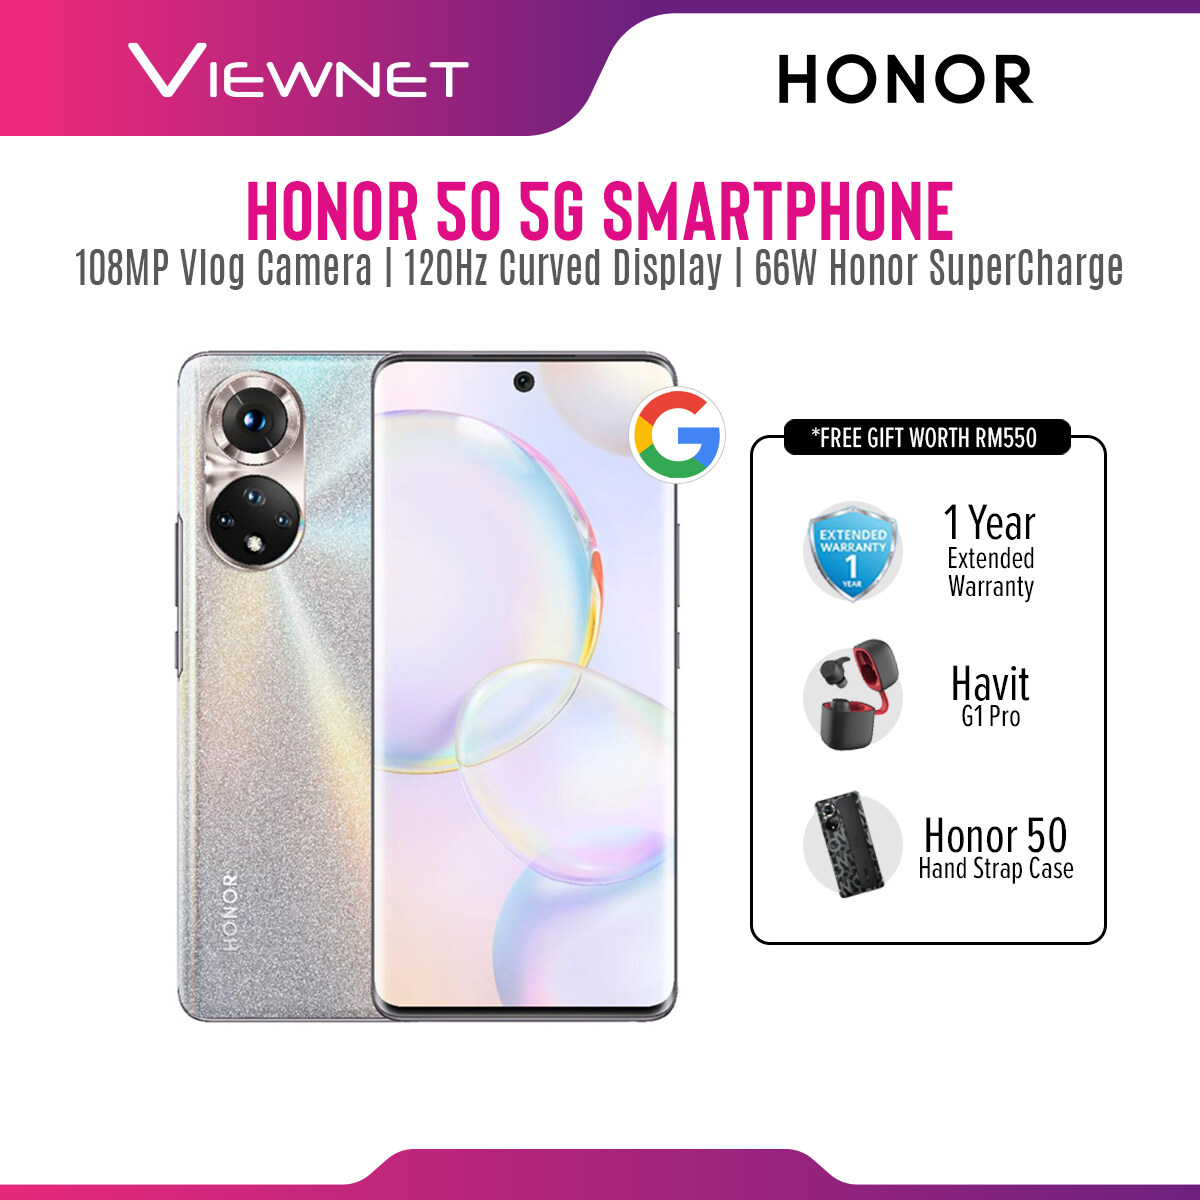  HONOR 50 (8GB+256GB) - 1+1 Year Warranty 